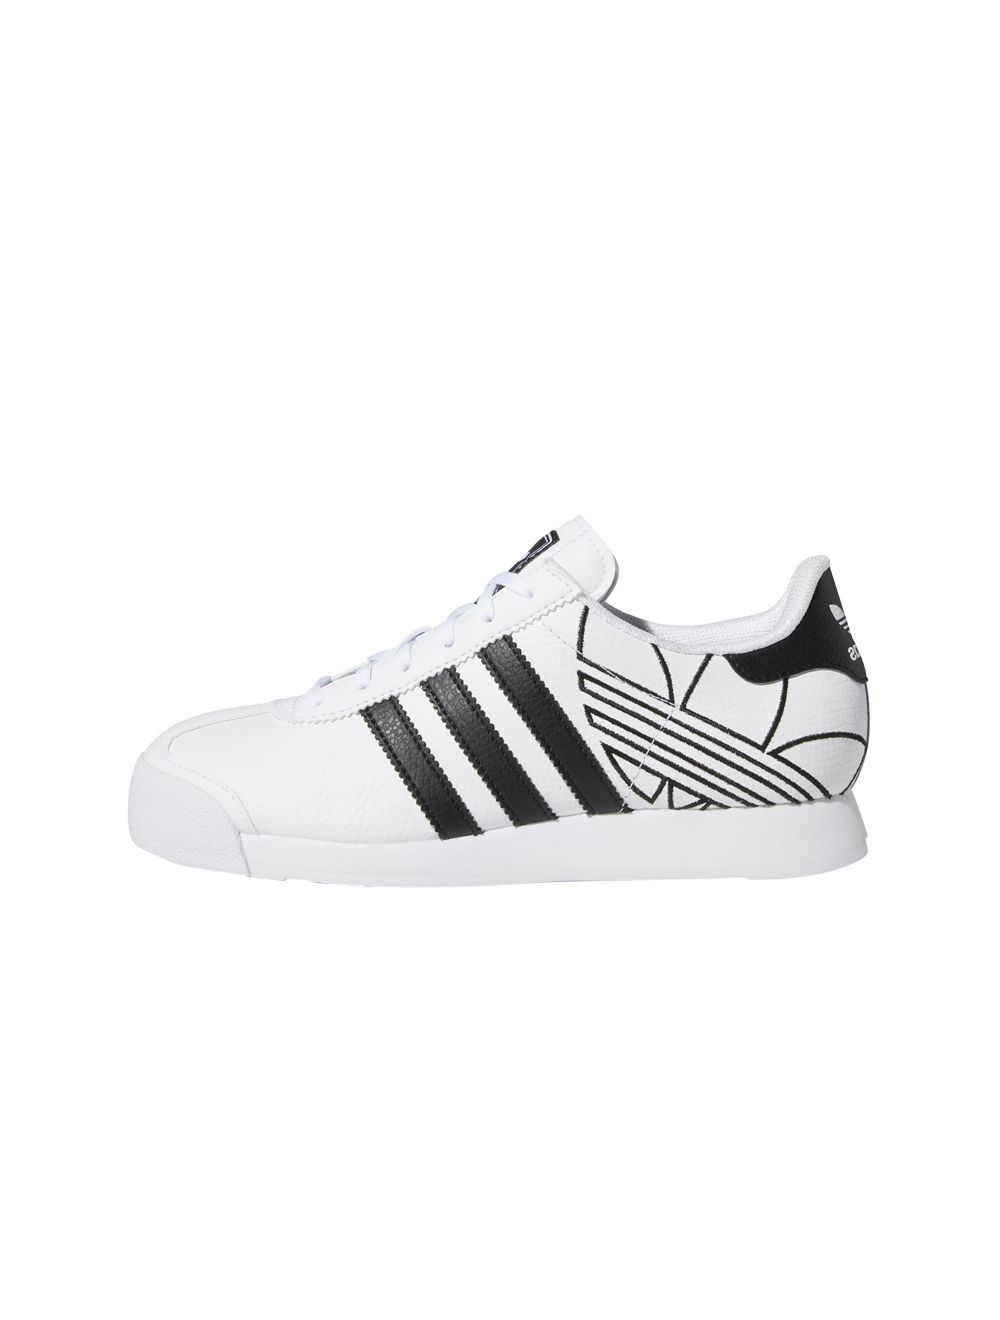 adidas samoa white and black